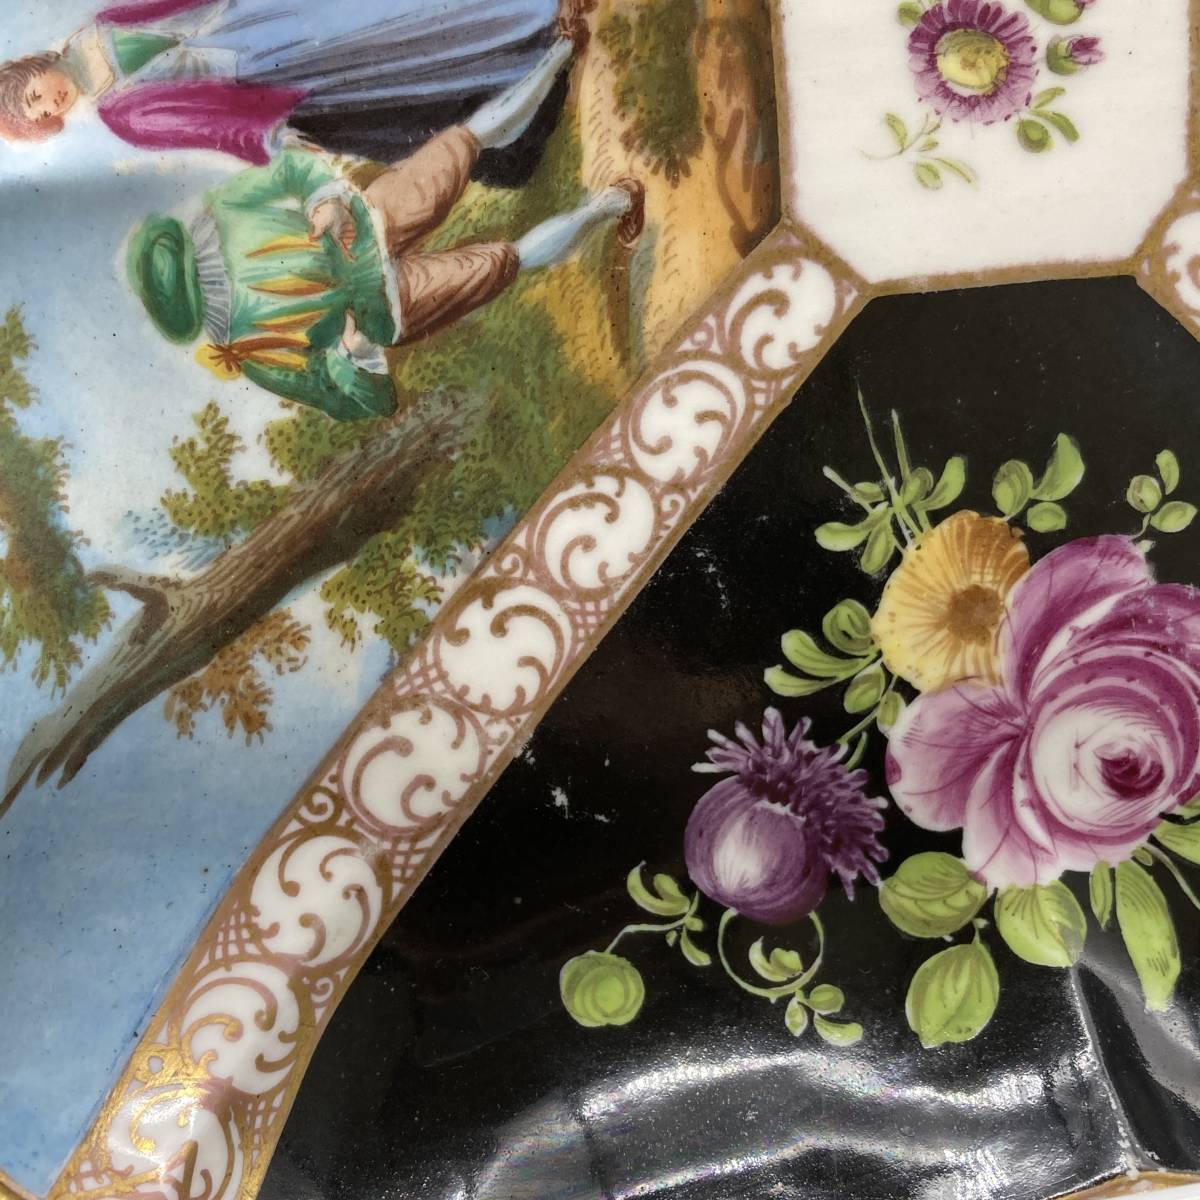 食器『マイセン プレート 472』MEISSEN 陶器 西洋食器 飾り皿 キズ・ヨゴレ・一部欠けあり 現状品 アンティーク ヴィンテージ B-1470_画像5